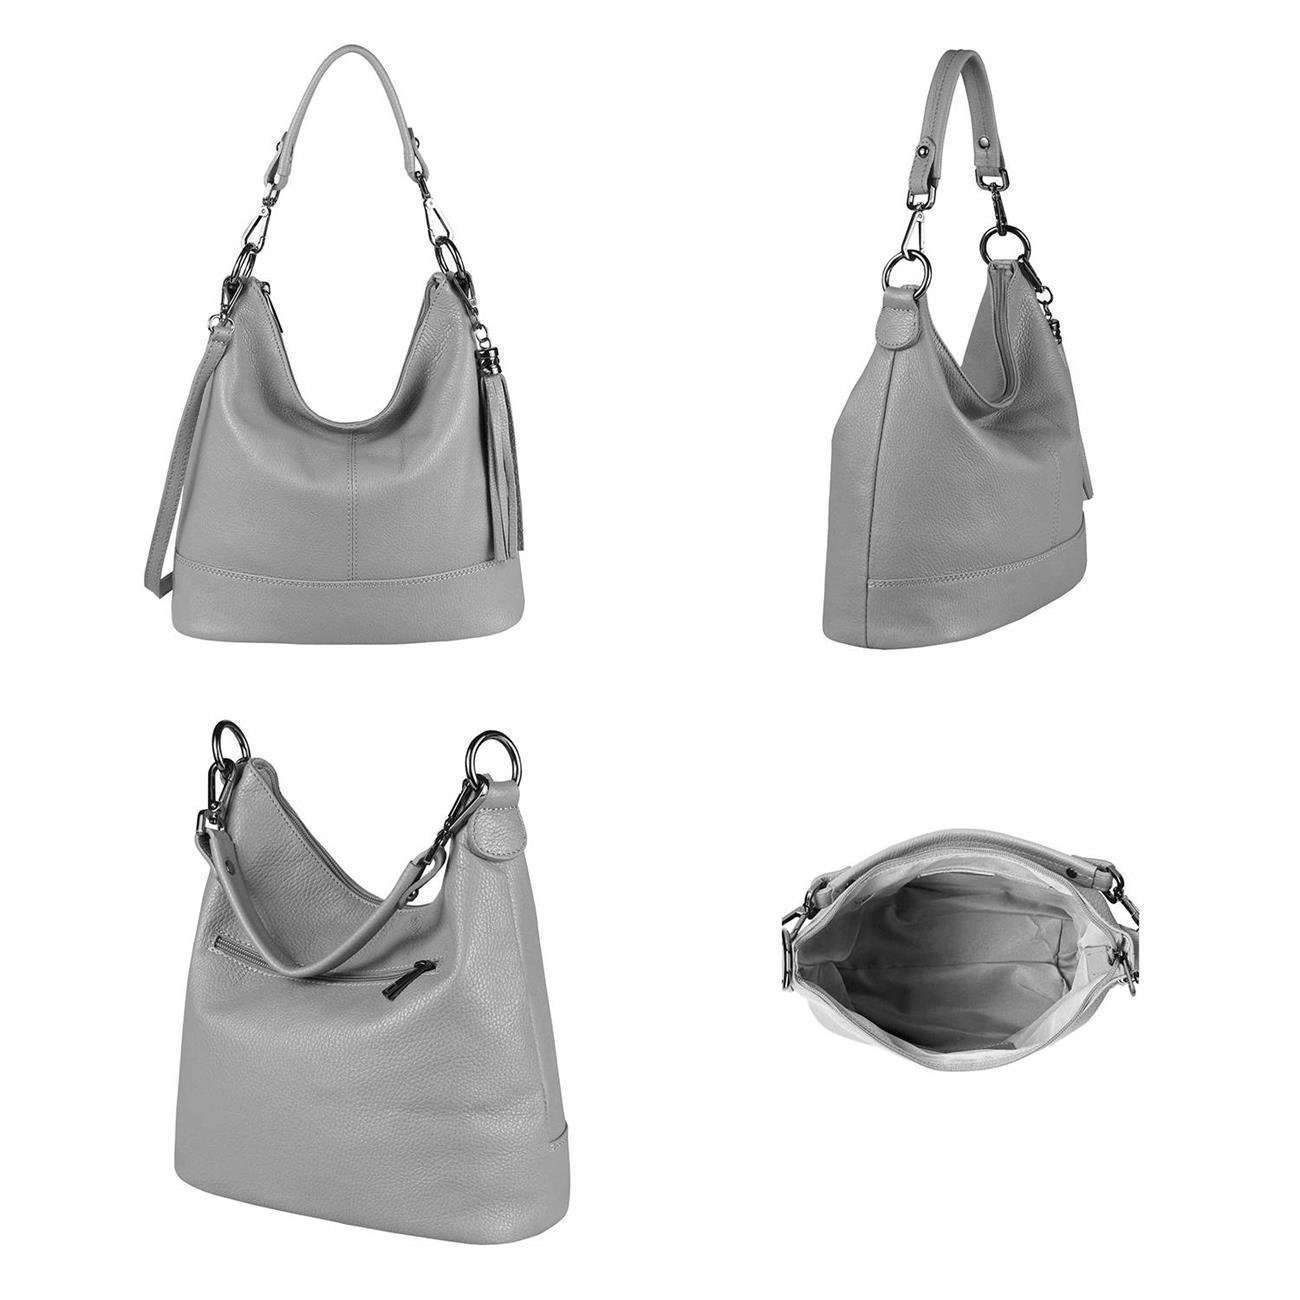 ITALYSHOP24 Schultertasche Italy als Made tragbar Tasche in Weiß CrossOver, Shopper, Damen Leder Handtasche, Umhängetasche